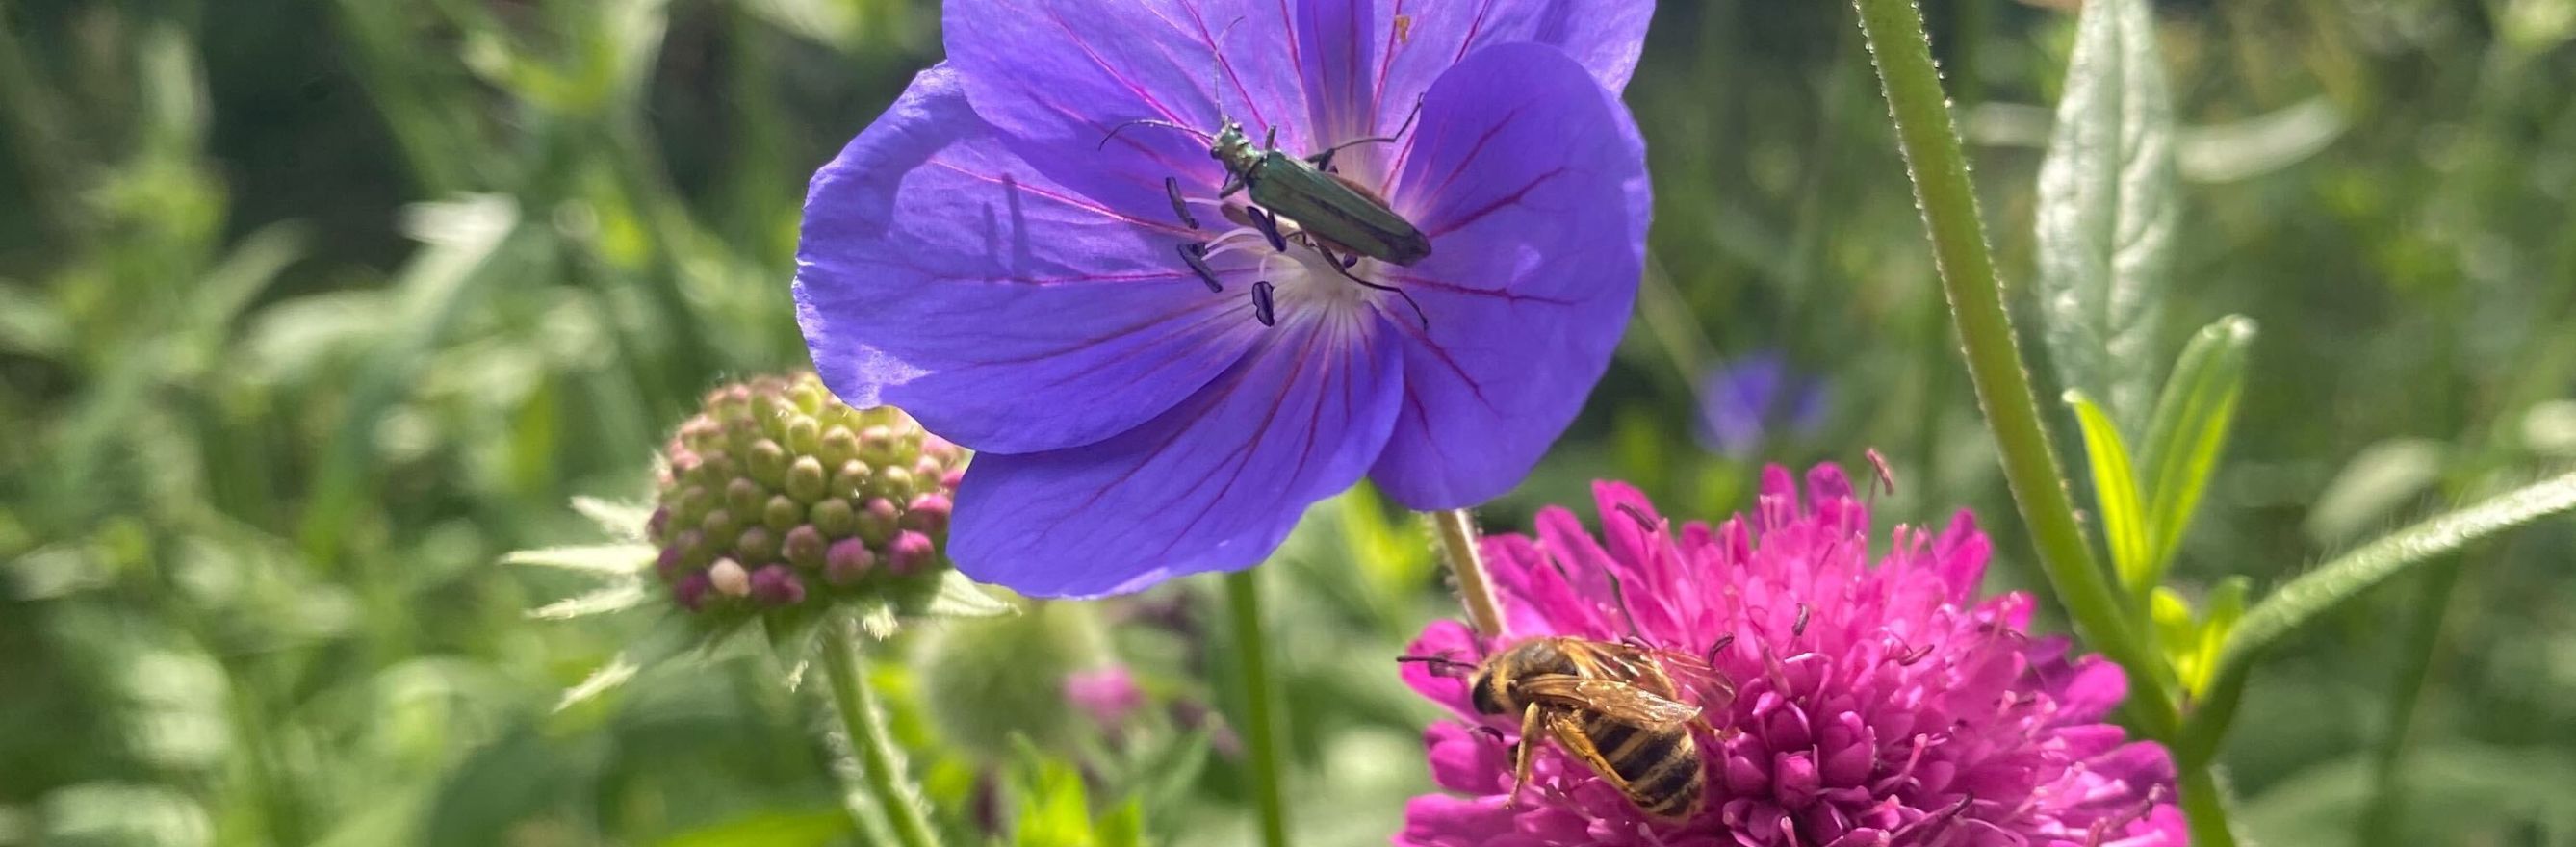 Une abeille qui butine une fleur